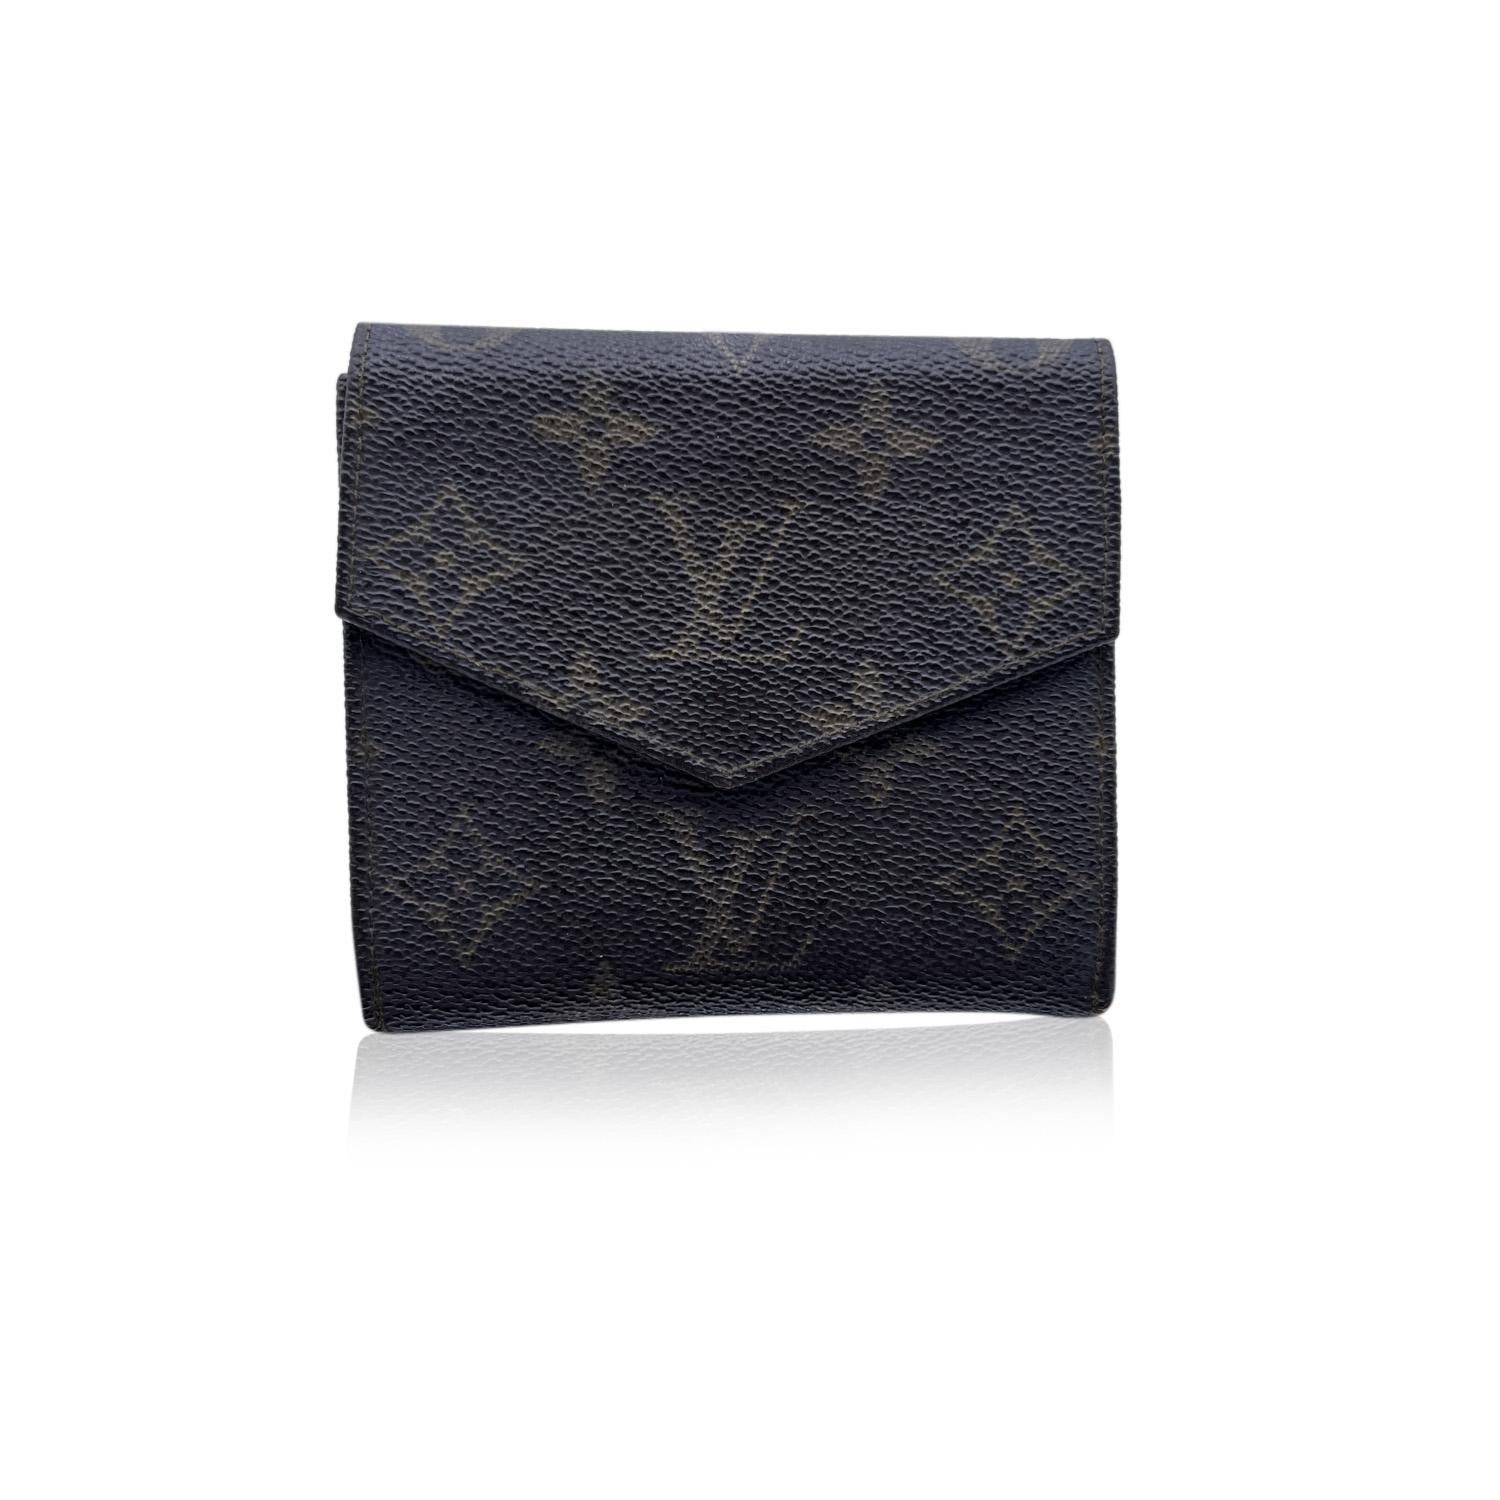 Black Louis Vuitton Vintage Pocket Double Flap Wallet Monogram Canvas